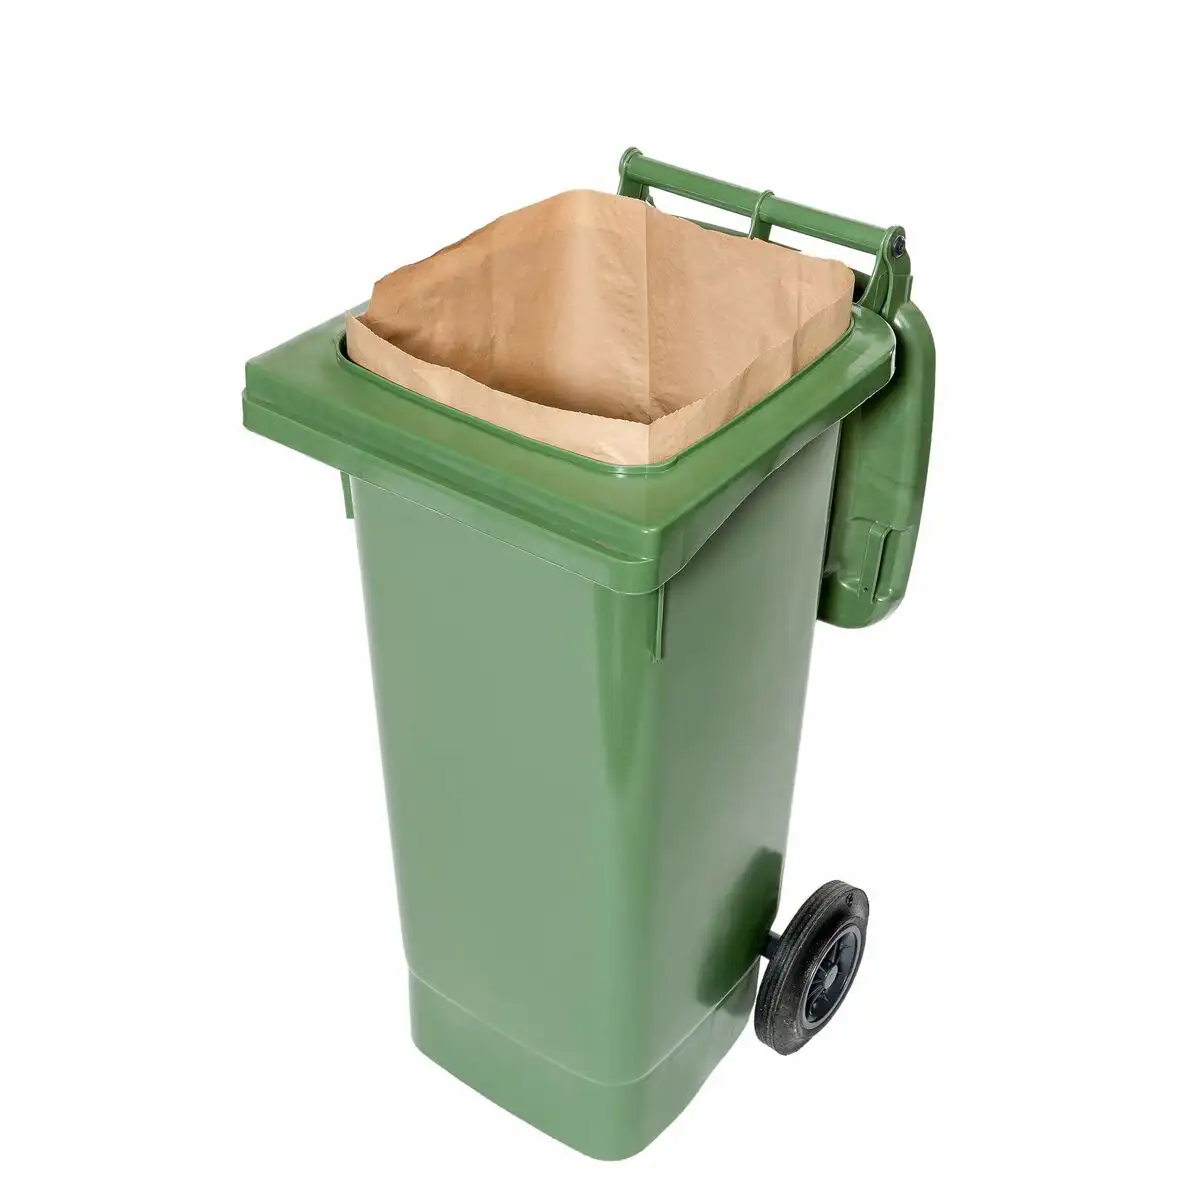 Sacs a ordures compostable reconditionne d _3753. DIAYTAR SENEGAL - Votre Source de Découvertes Shopping. Découvrez des trésors dans notre boutique en ligne, allant des articles artisanaux aux innovations modernes.